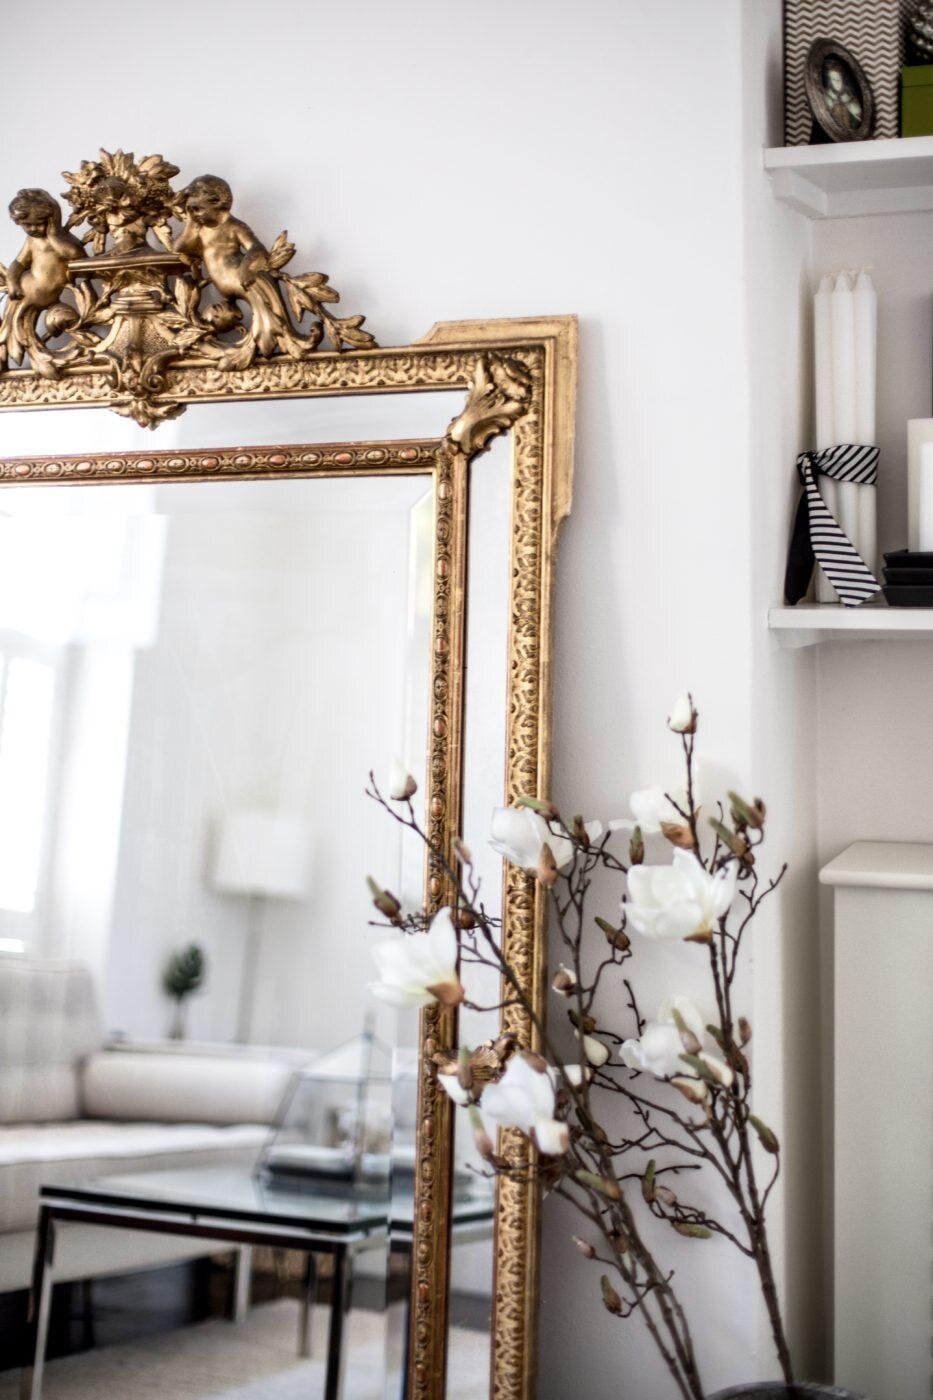 ilaria fatone inspirations - un miroir oversize ancien posé au sol